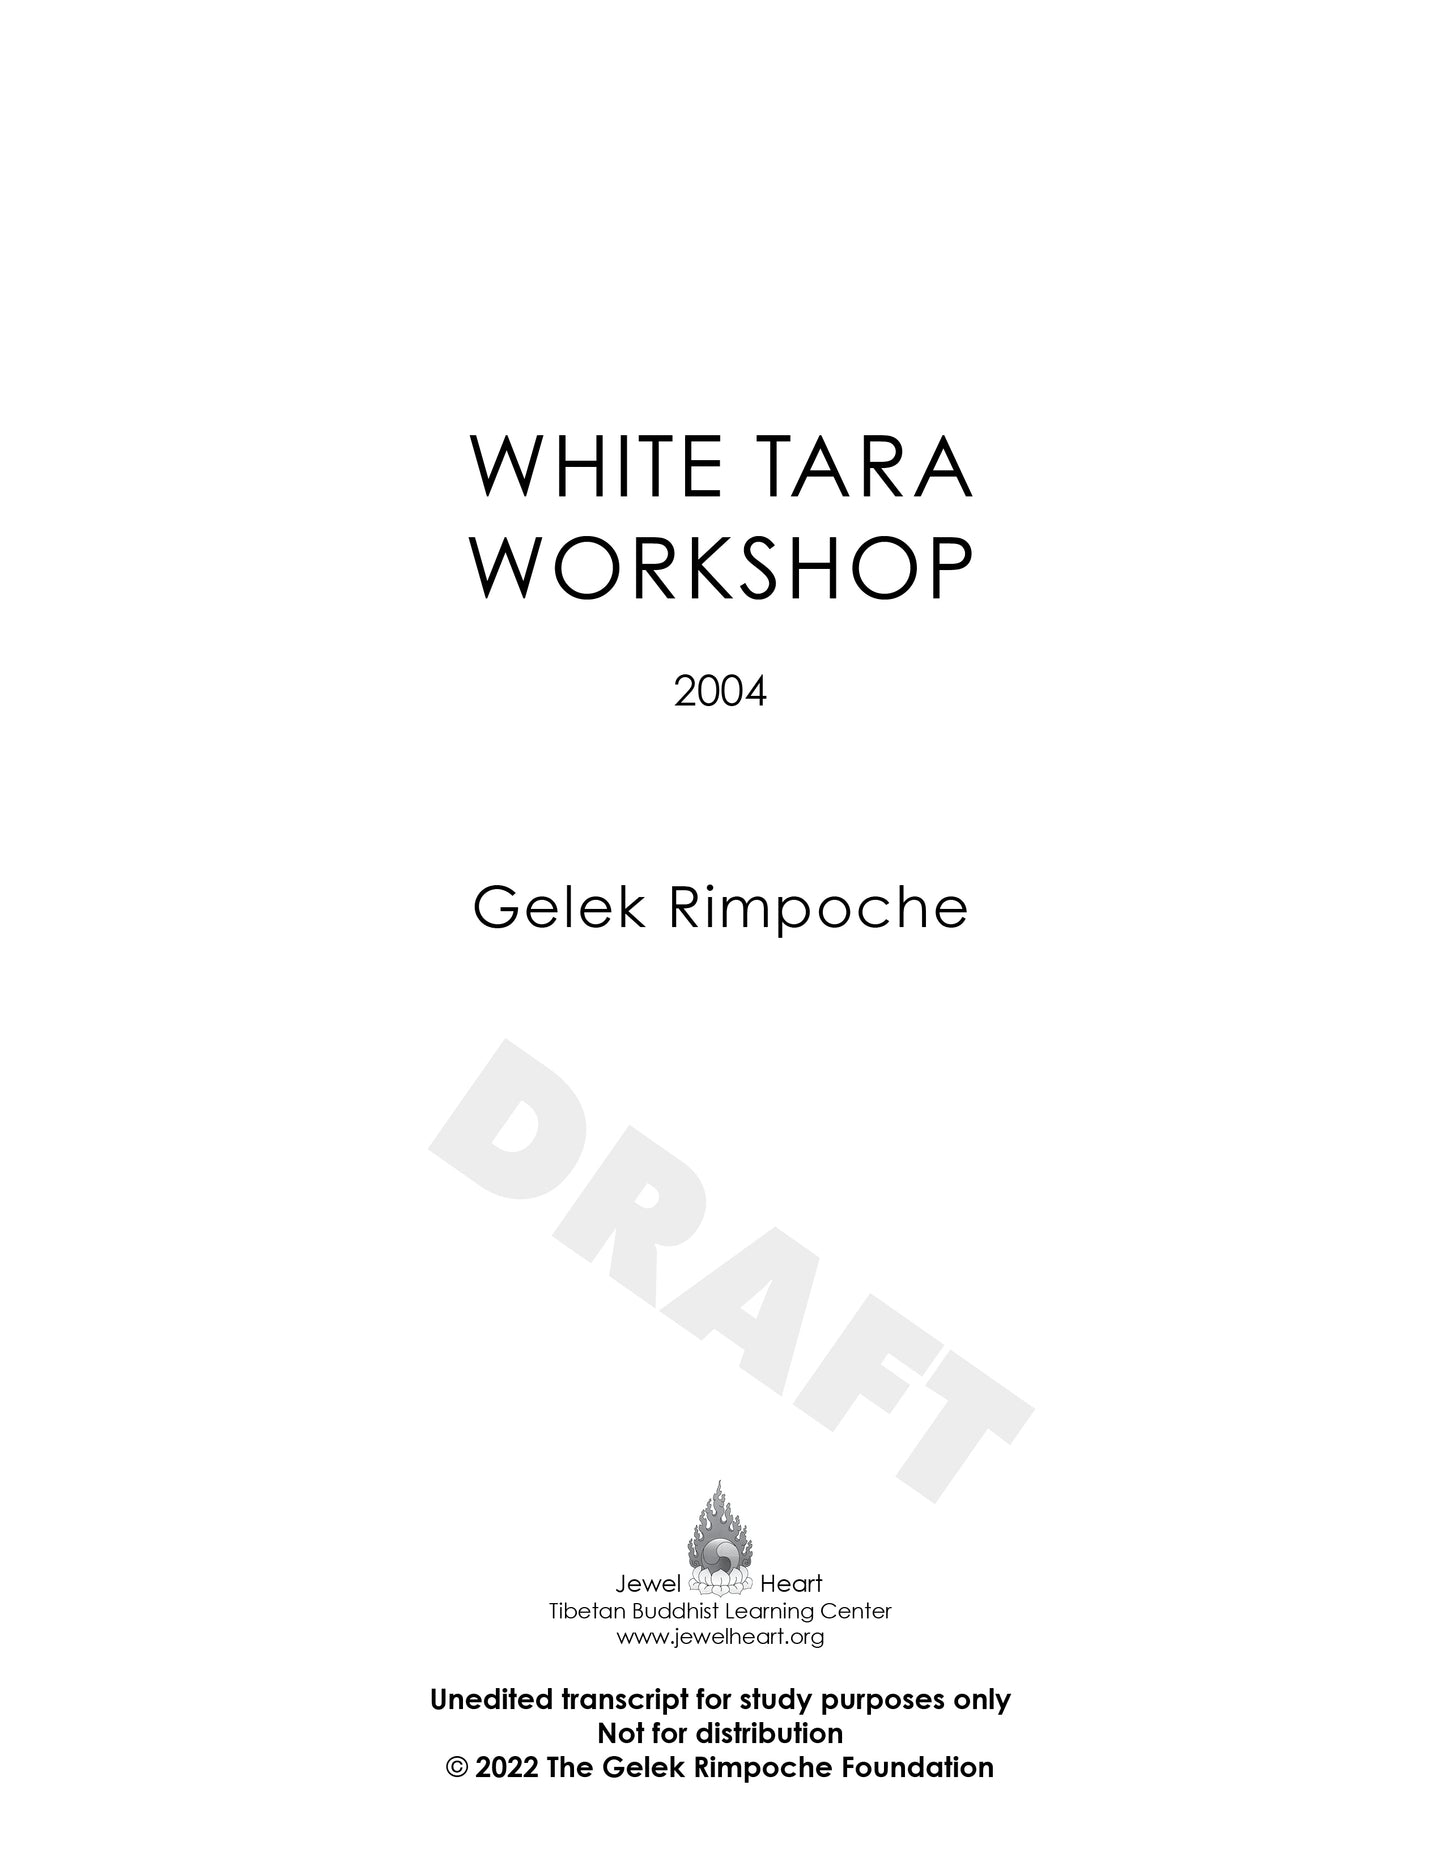 WHITE TARA WORKSHOP 2004